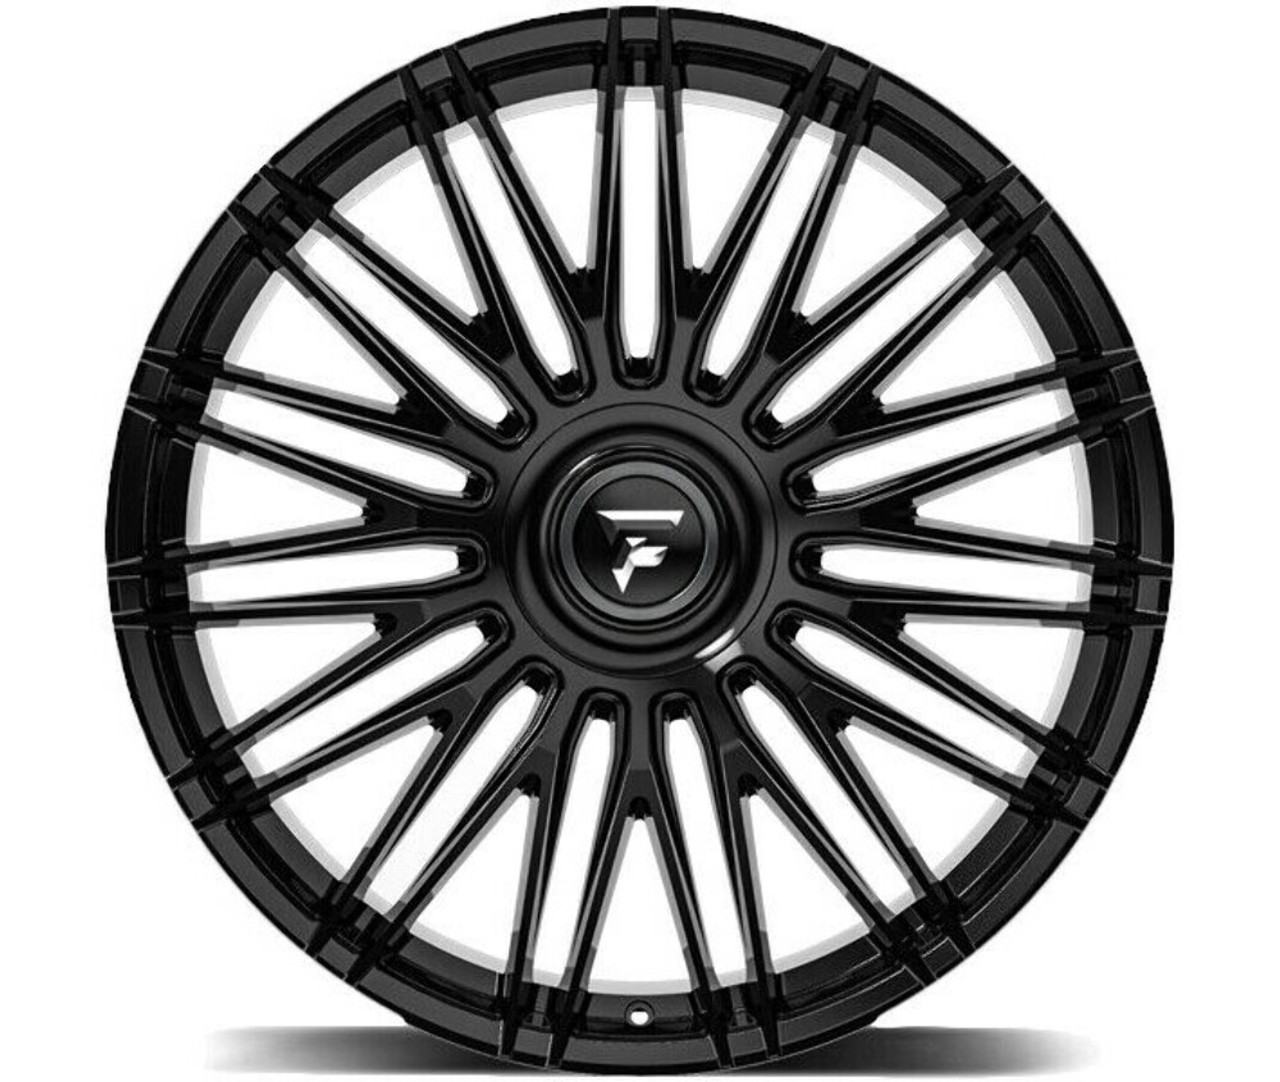 Set 4 26" Fittipaldi Street FS369B Gloss Black 26x10 Wheels 5x112 5x120 30mm Rim